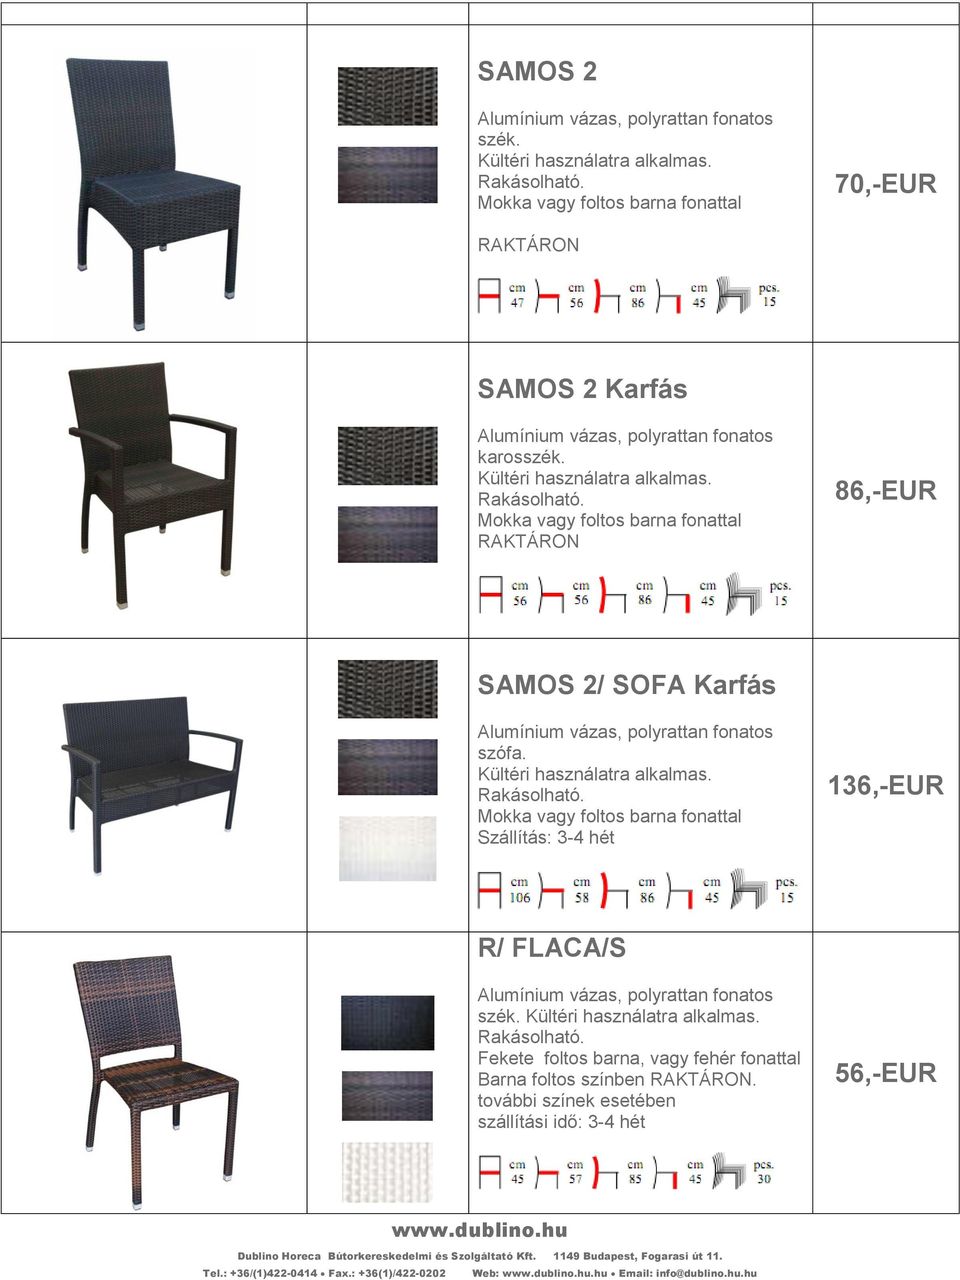 Mokka vagy foltos barna fonattal 136,-EUR R/ FLACA/S szék.